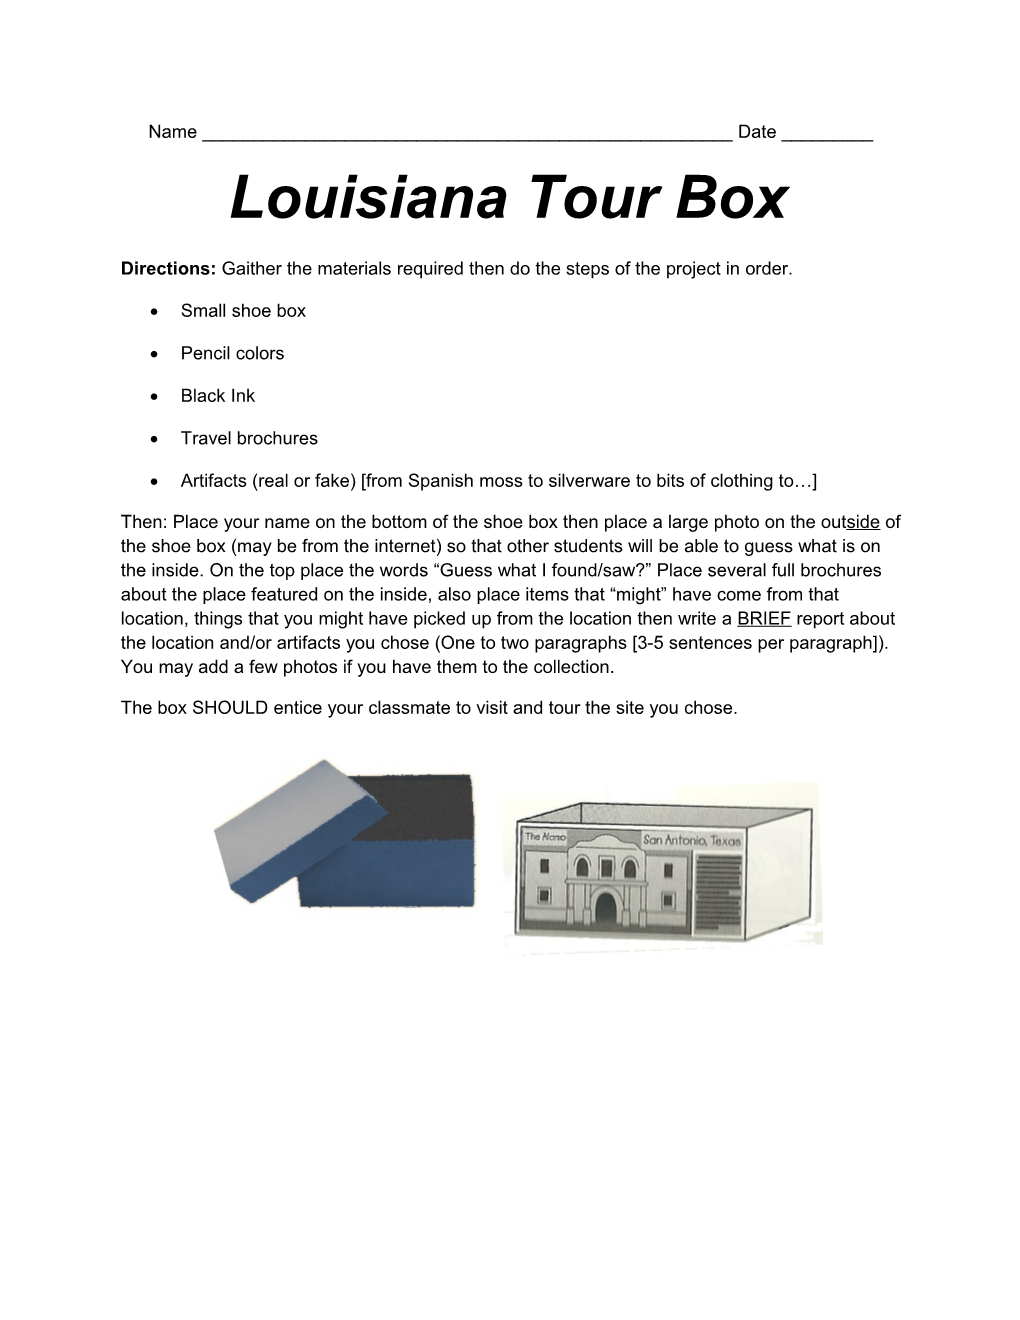 Louisiana Tour Box